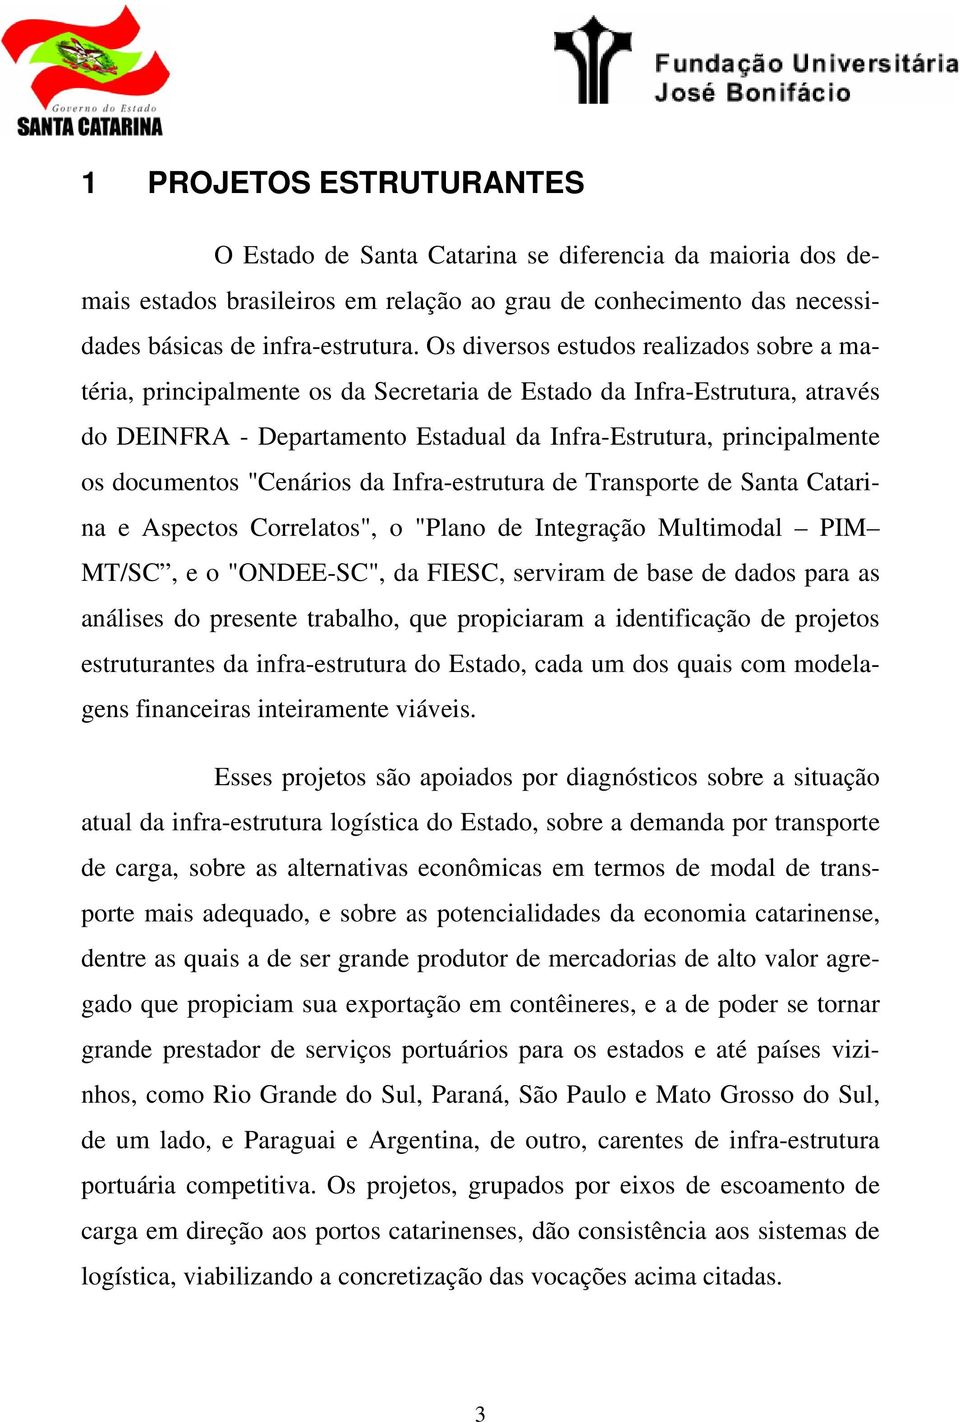 documentos "Cenários da Infra-estrutura de Transporte de Santa Catarina e Aspectos Correlatos", o "Plano de Integração Multimodal PIM MT/SC, e o "ONDEE-SC", da FIESC, serviram de base de dados para